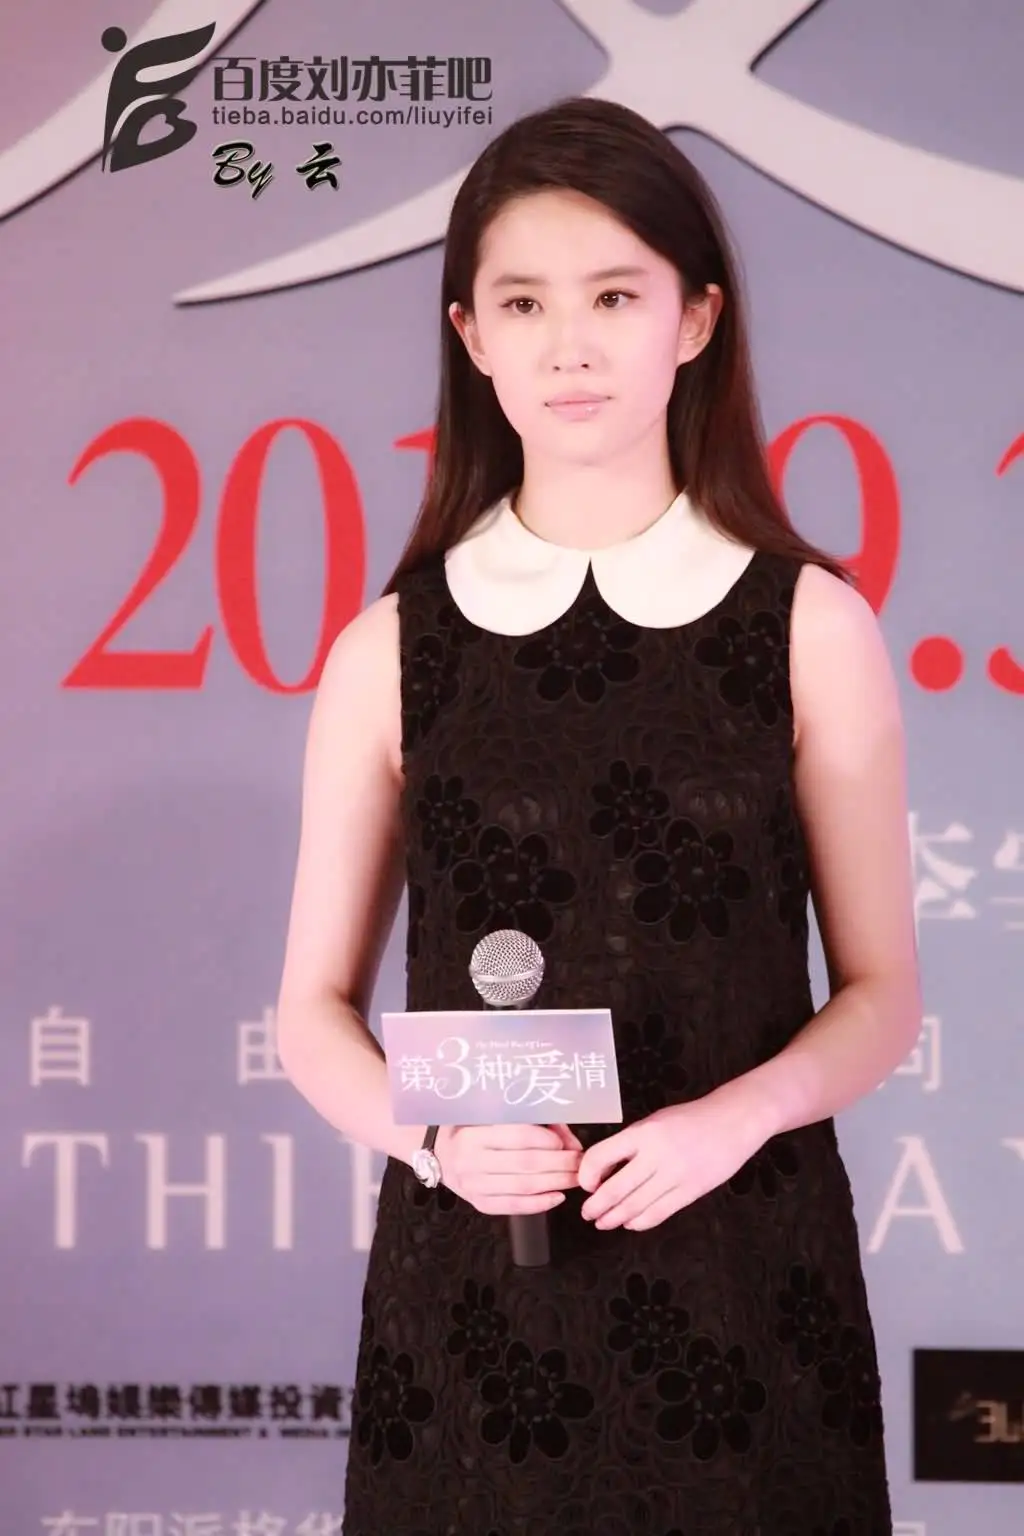 《第三种爱情》北京发布会（2015.8.13）